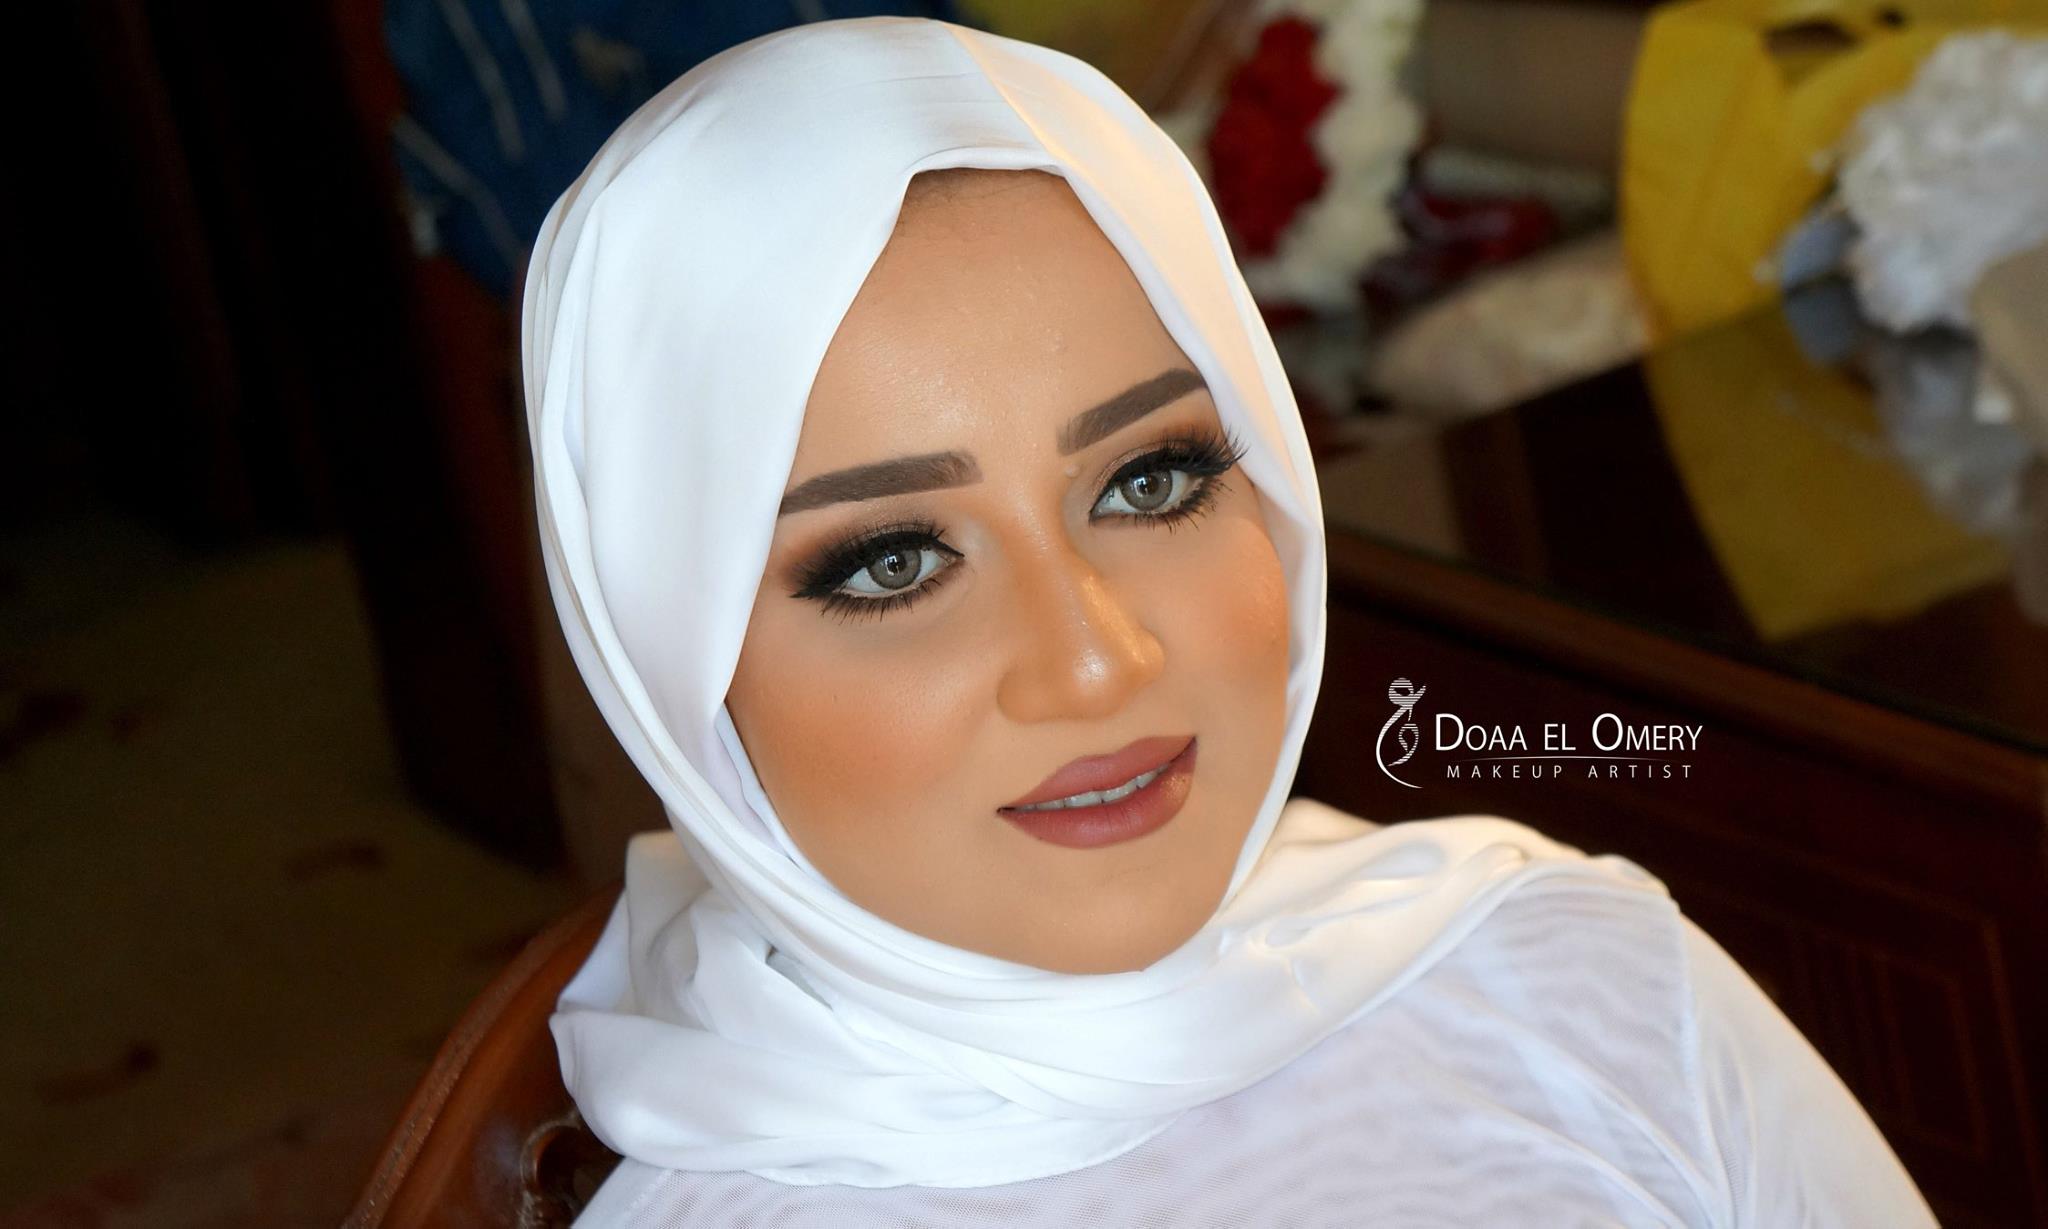 دعاء العميرى ميك اب ارتيست doaa El Omery makeup artist 2